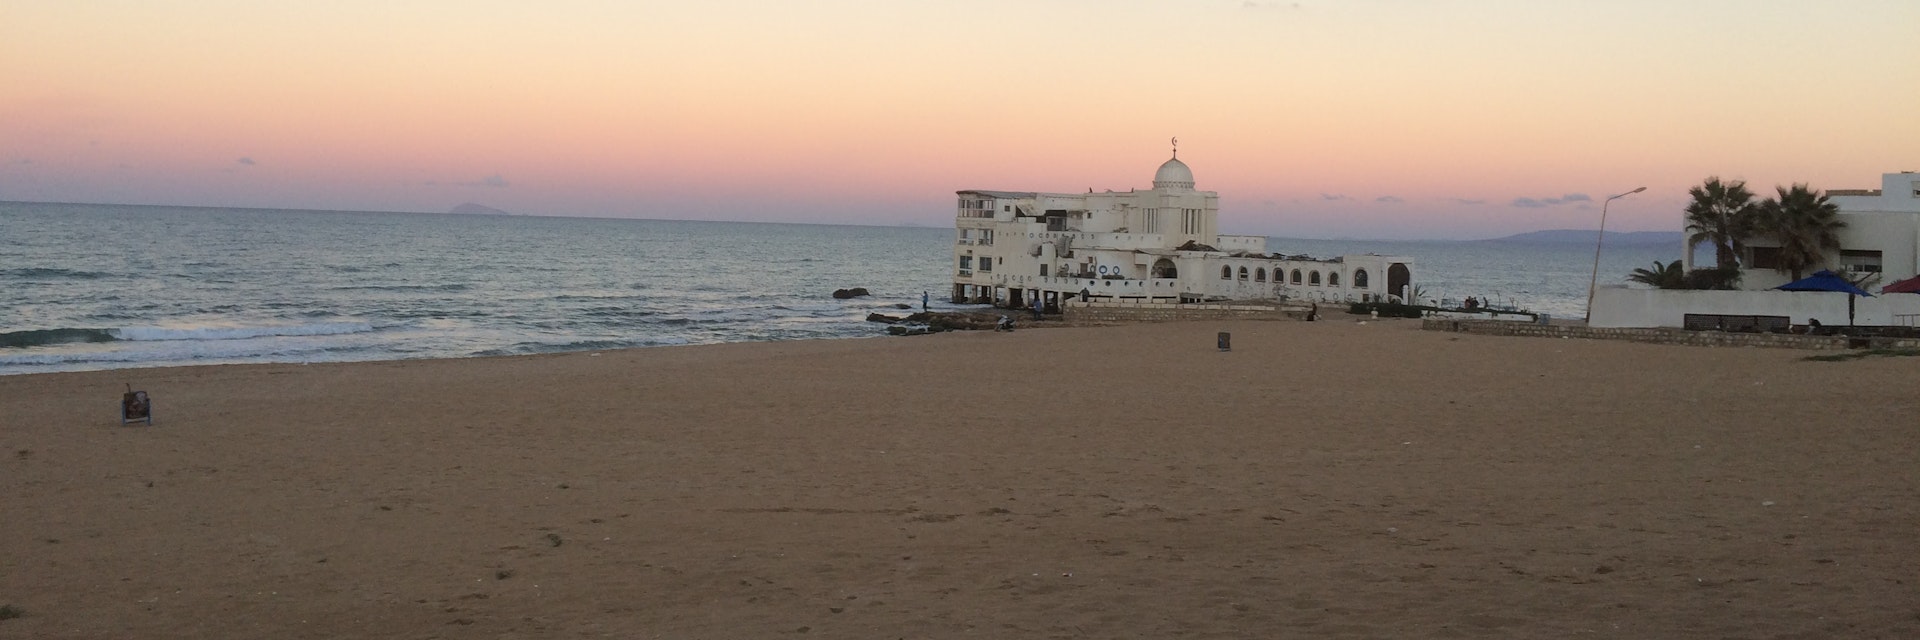 tunisia tourism beach